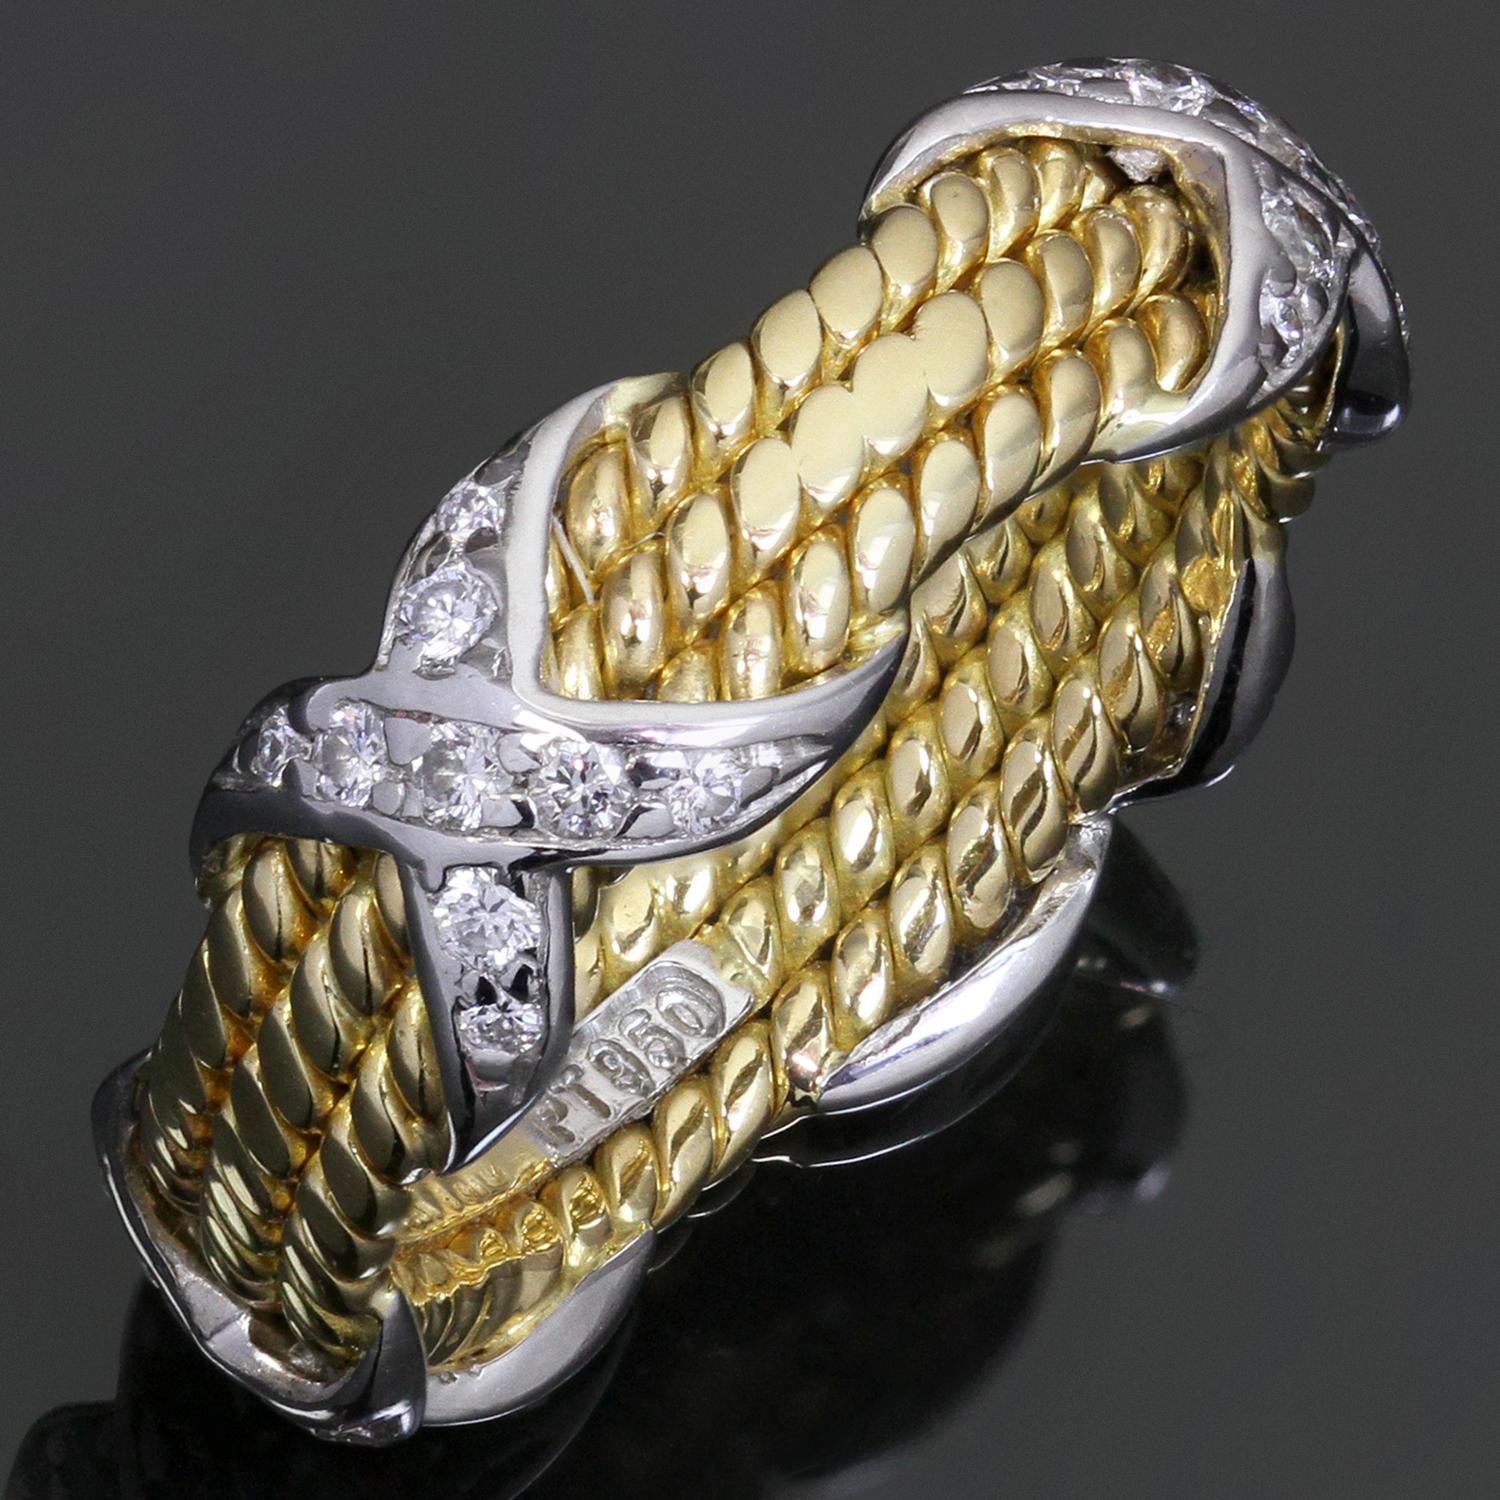 Dieser klassische Ring von Tiffany & Co. wurde von Jean Schlumberger entworfen und zeichnet sich durch ein 3-reihiges Seildesign aus, das aus 18 Karat Gelbgold gefertigt und mit 4 X-Motiven aus 950er Platin akzentuiert ist, die mit runden,